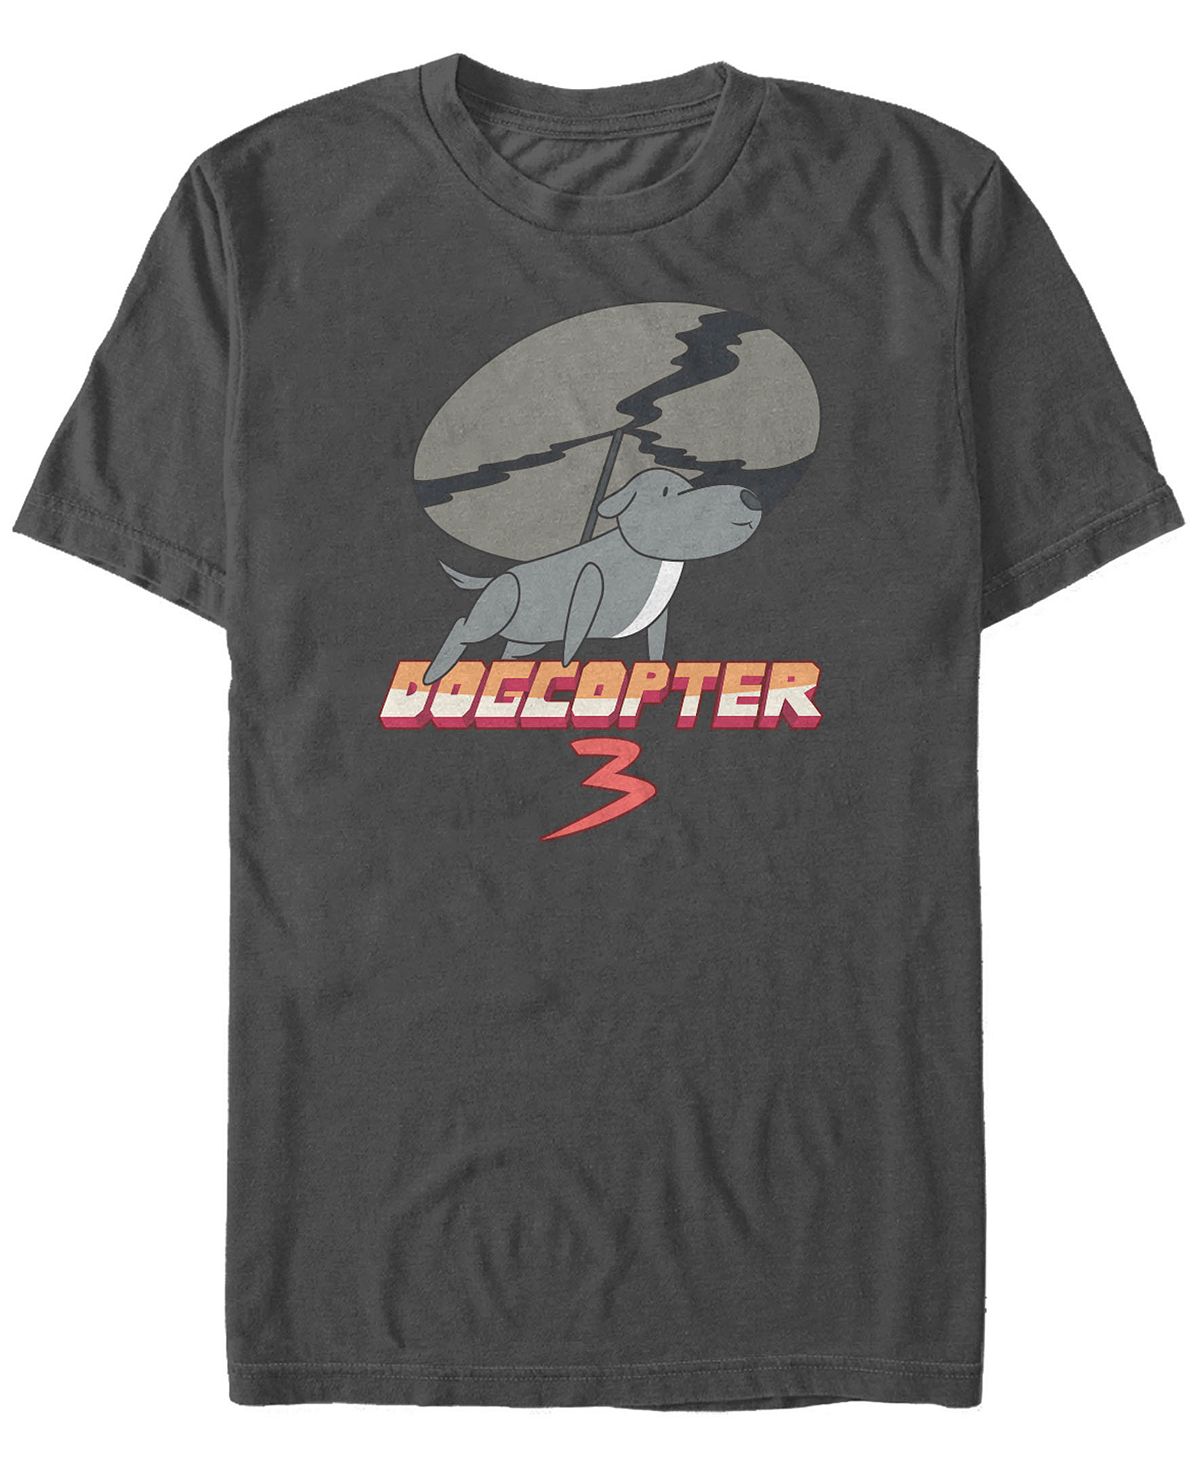 Мужская футболка с коротким рукавом steven universe dogcopter 3 Fifth Sun, мульти bratz школа крутых девчонок 2